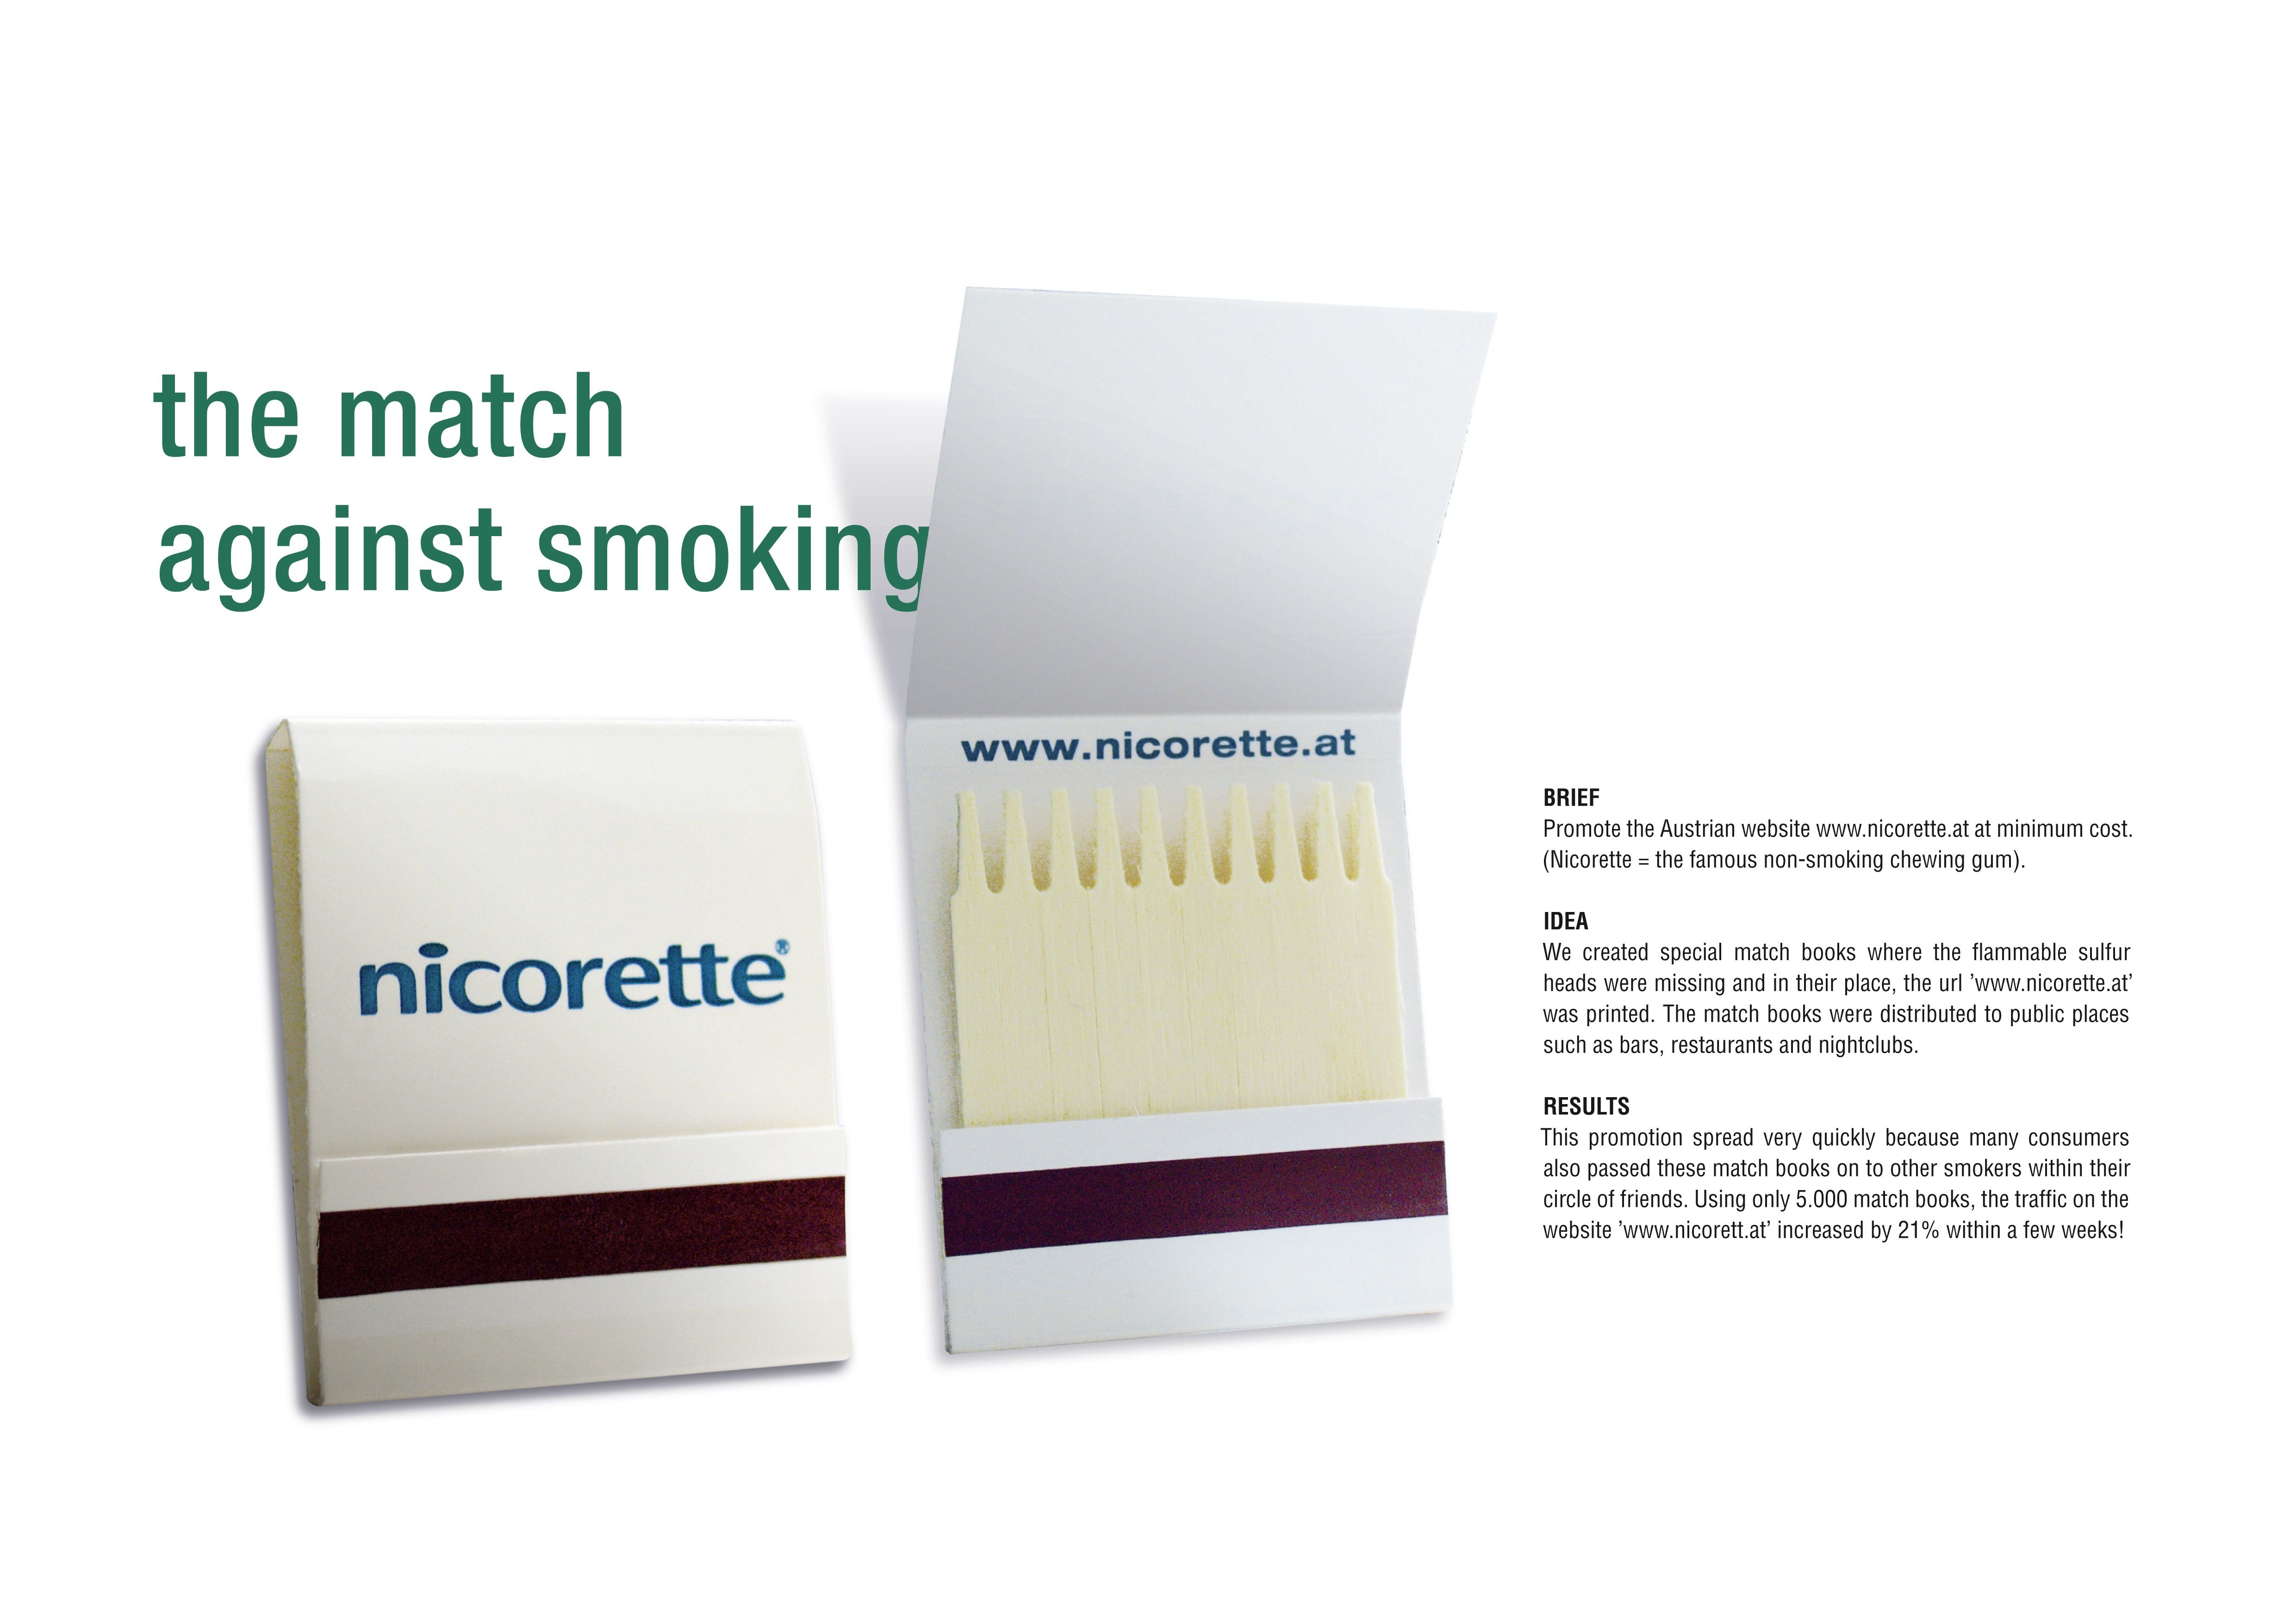 NICORETTE ANTI-SMOKING CHEWING GUM